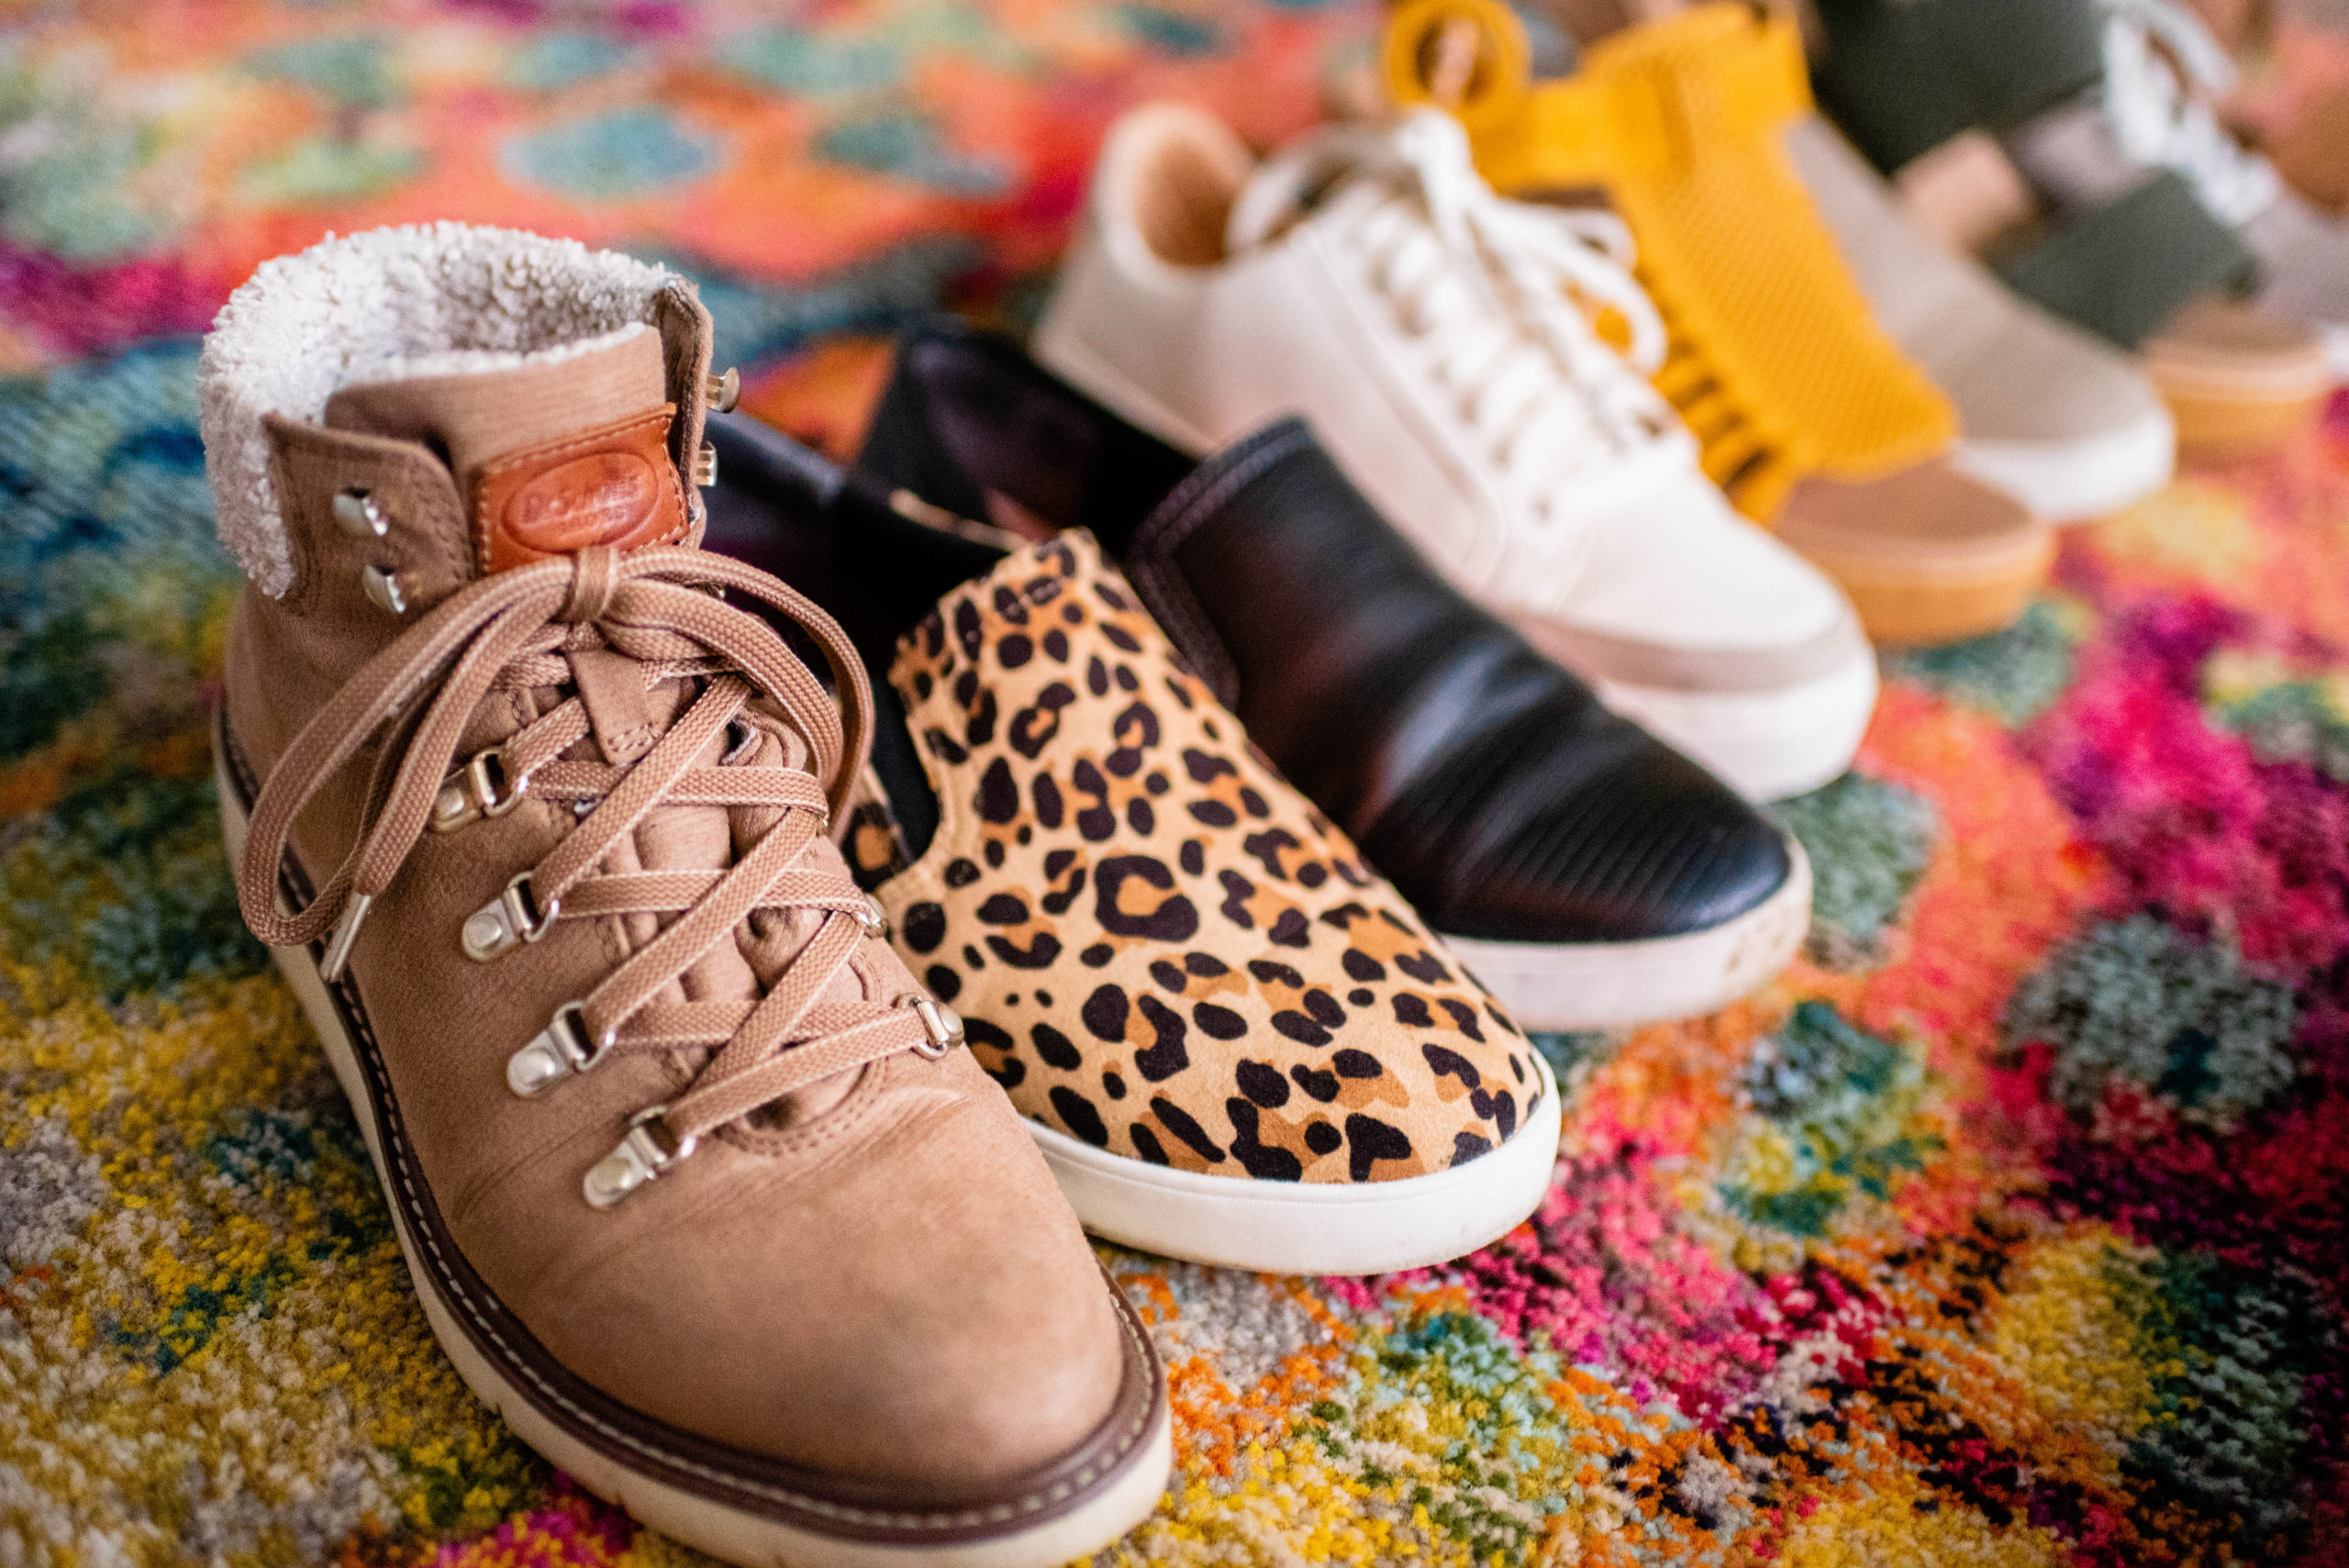 dr scholls leopard shoes